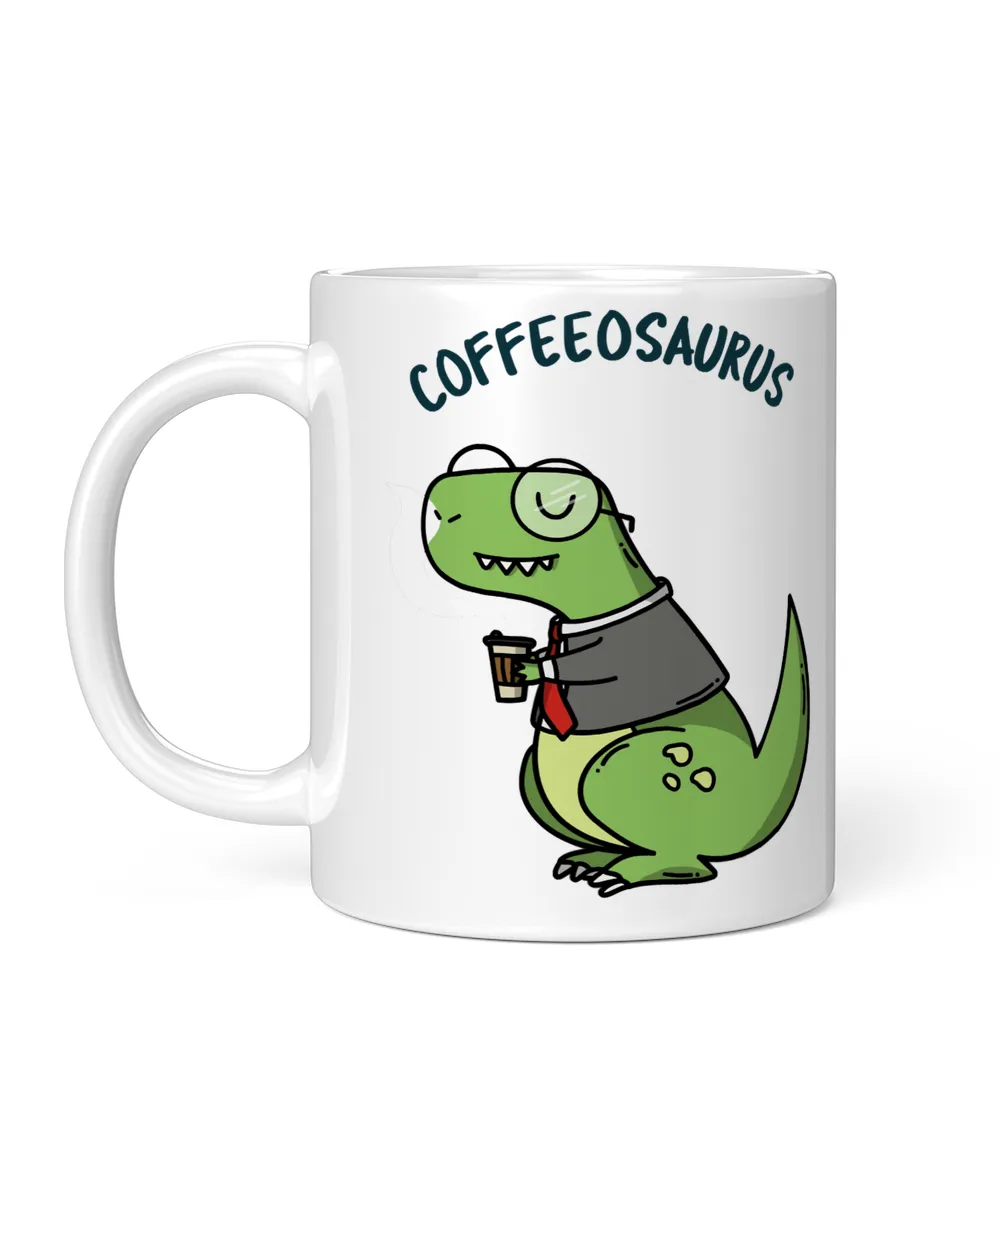 Dinosaur funny coffee dinosaur Dino